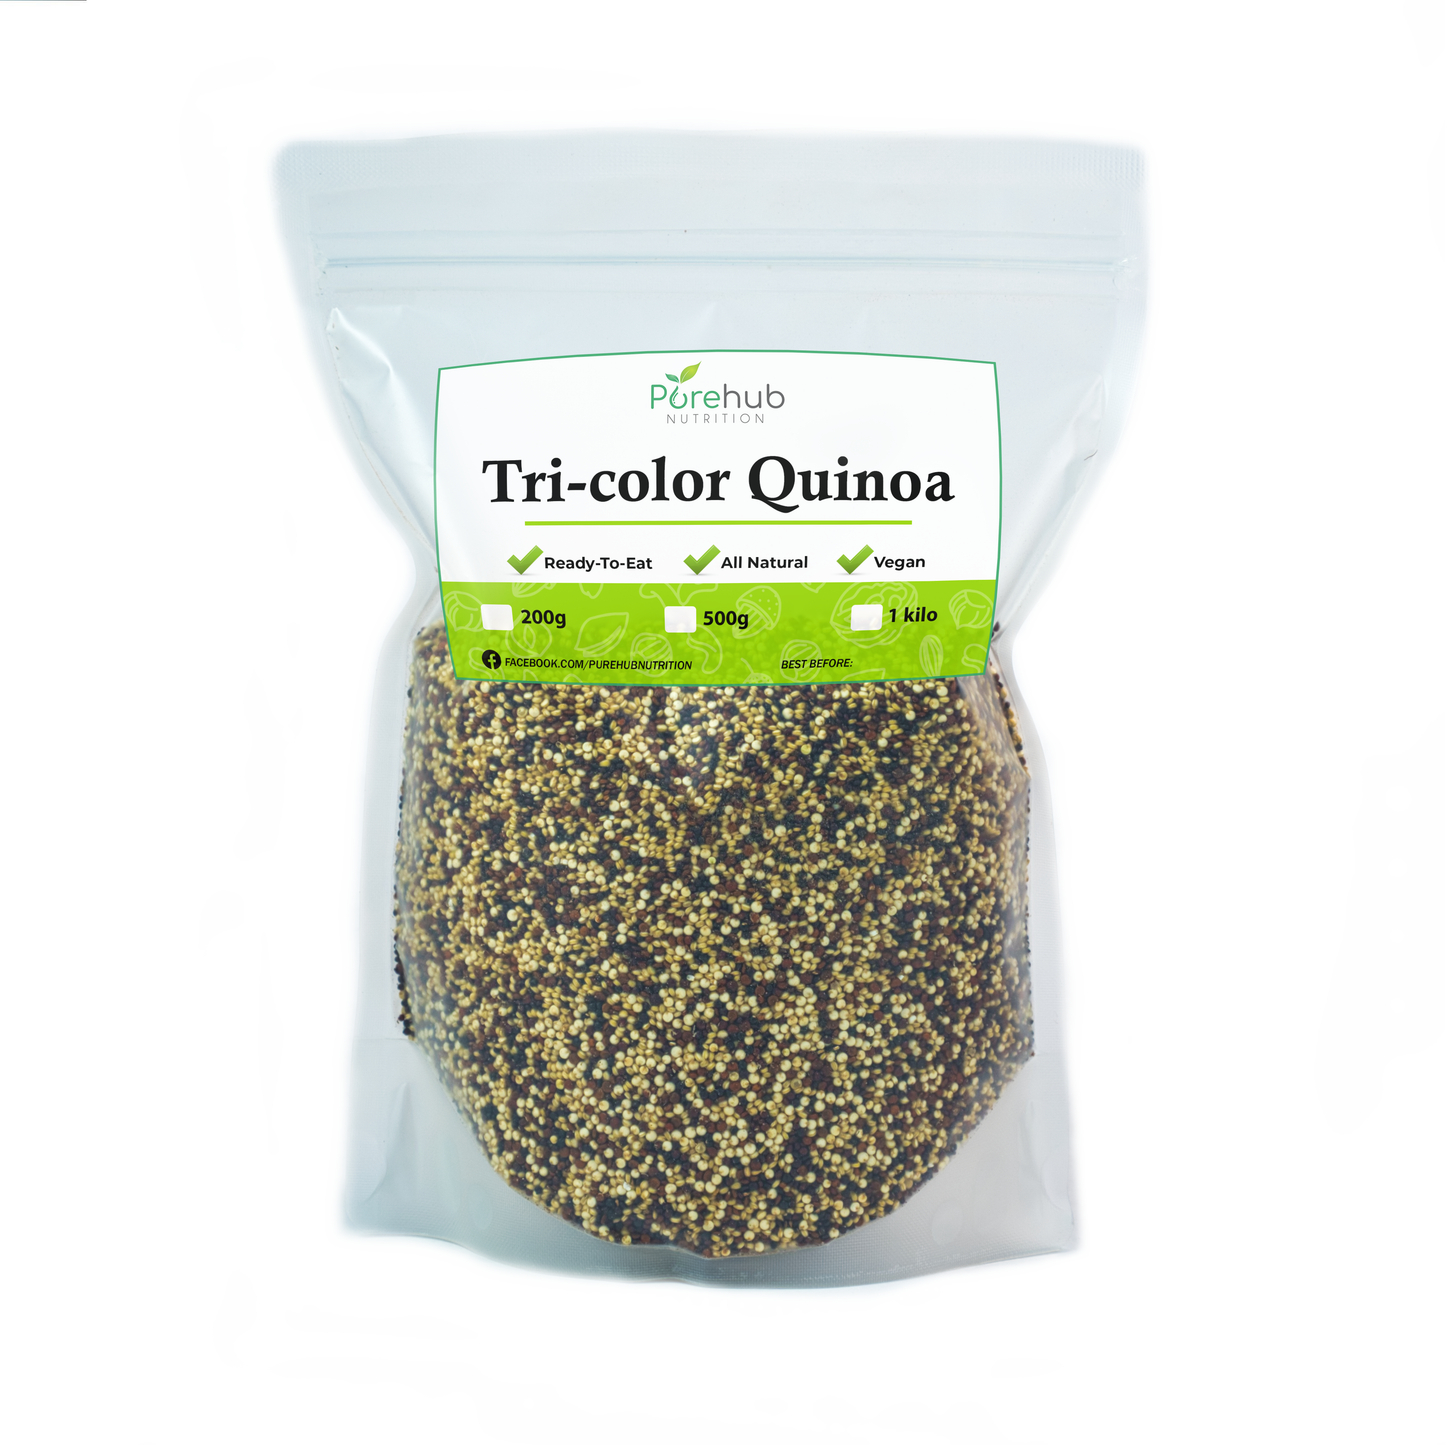 Tri-color Quinoa